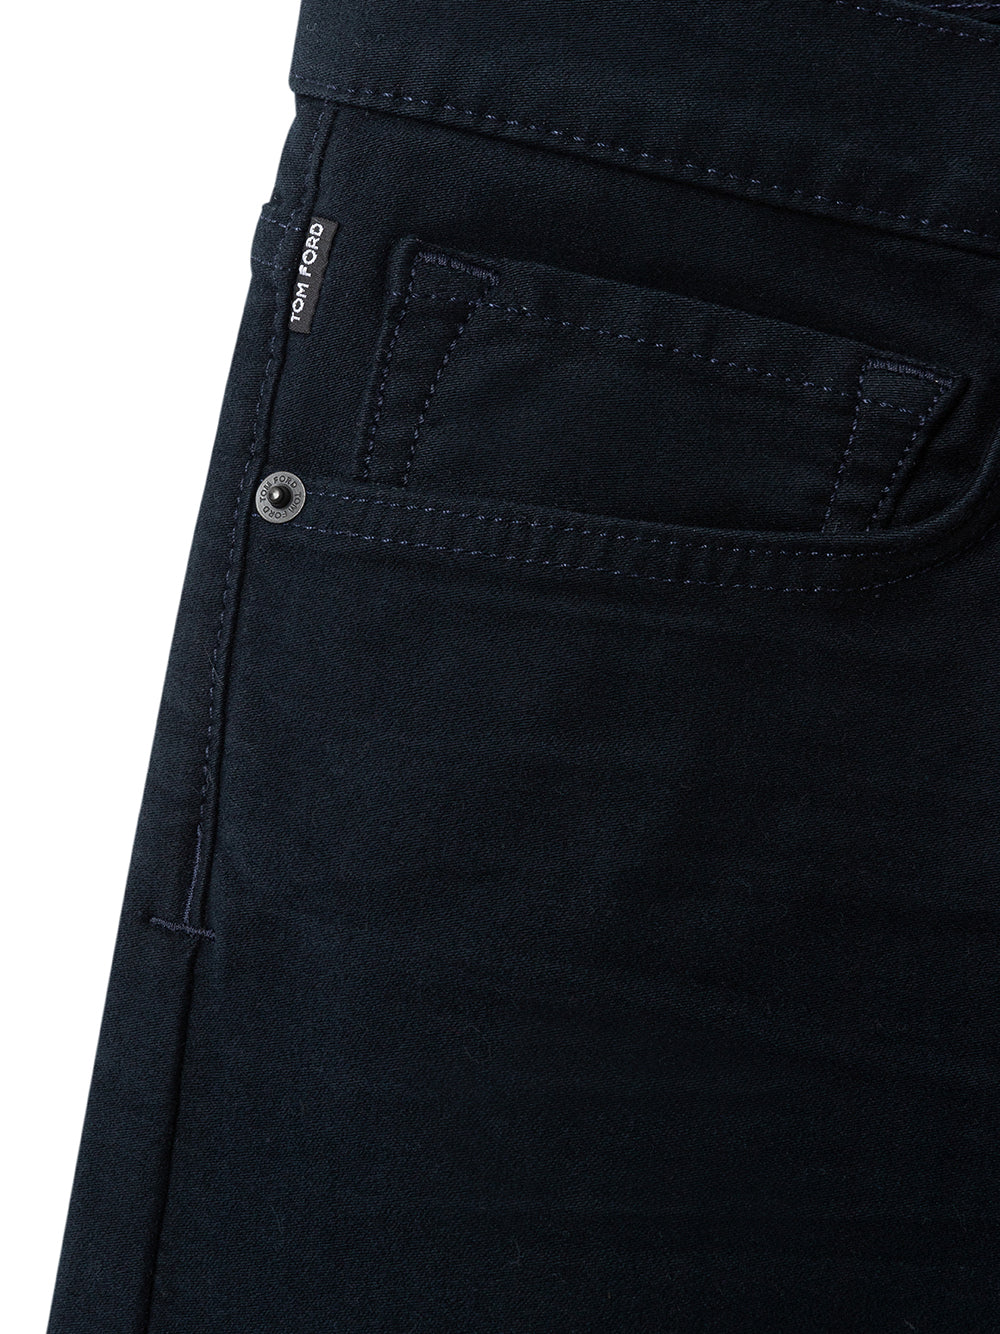 Pantalones elásticos con cinco bolsillos de Tom Ford